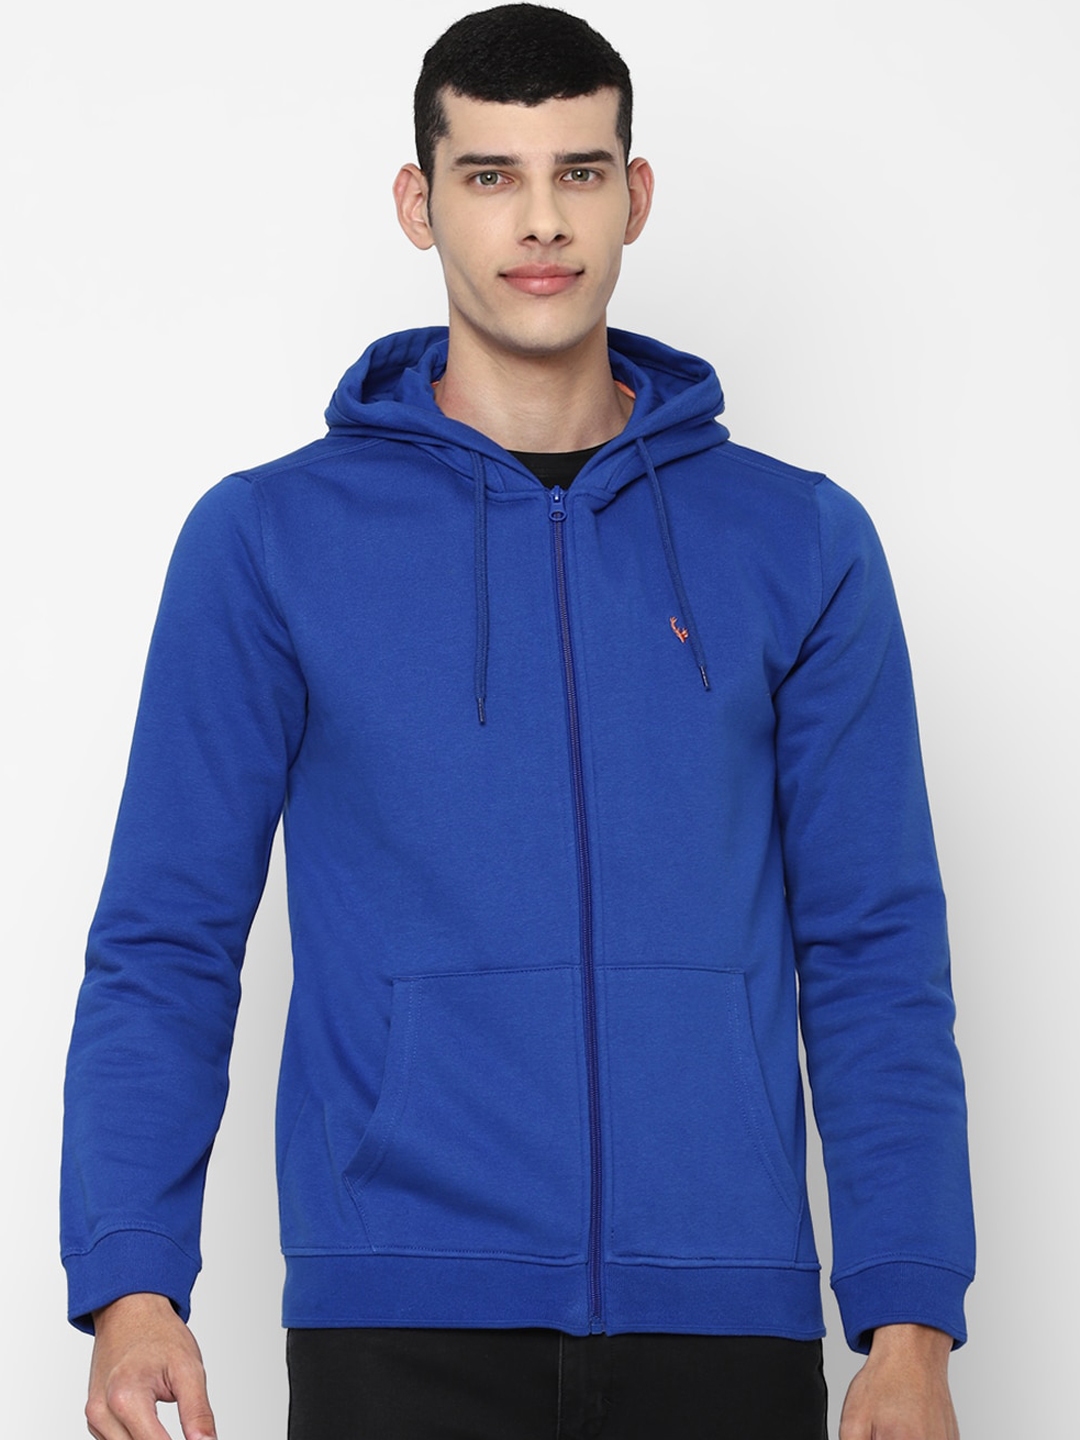 Buy Allen Solly Men Blue Hooded Sweatshirt - Sweatshirts for Men ...